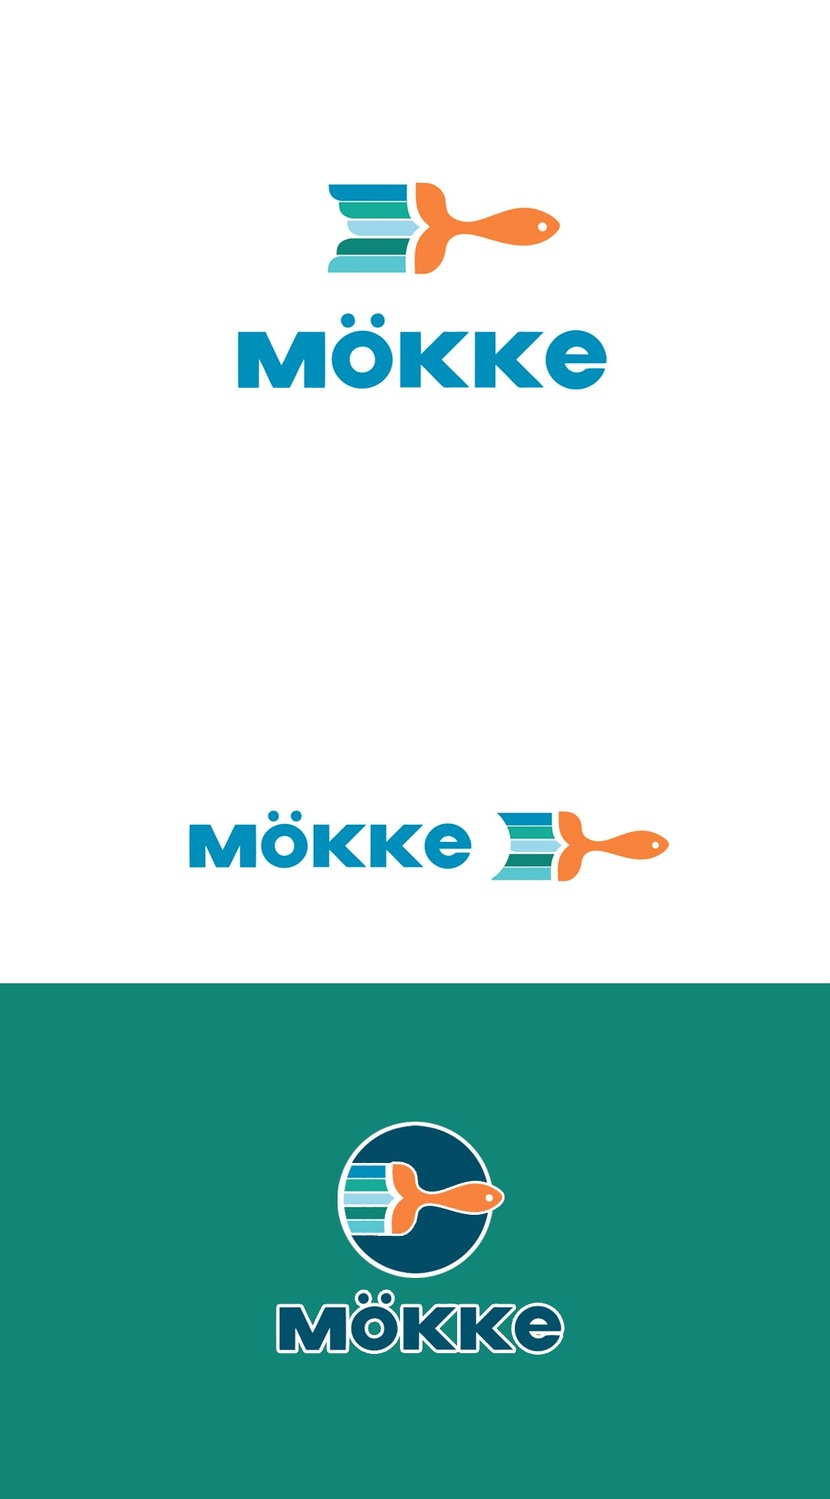 концепция- Рыбка Мёкке - Разработка графического элемента к основному логотипу